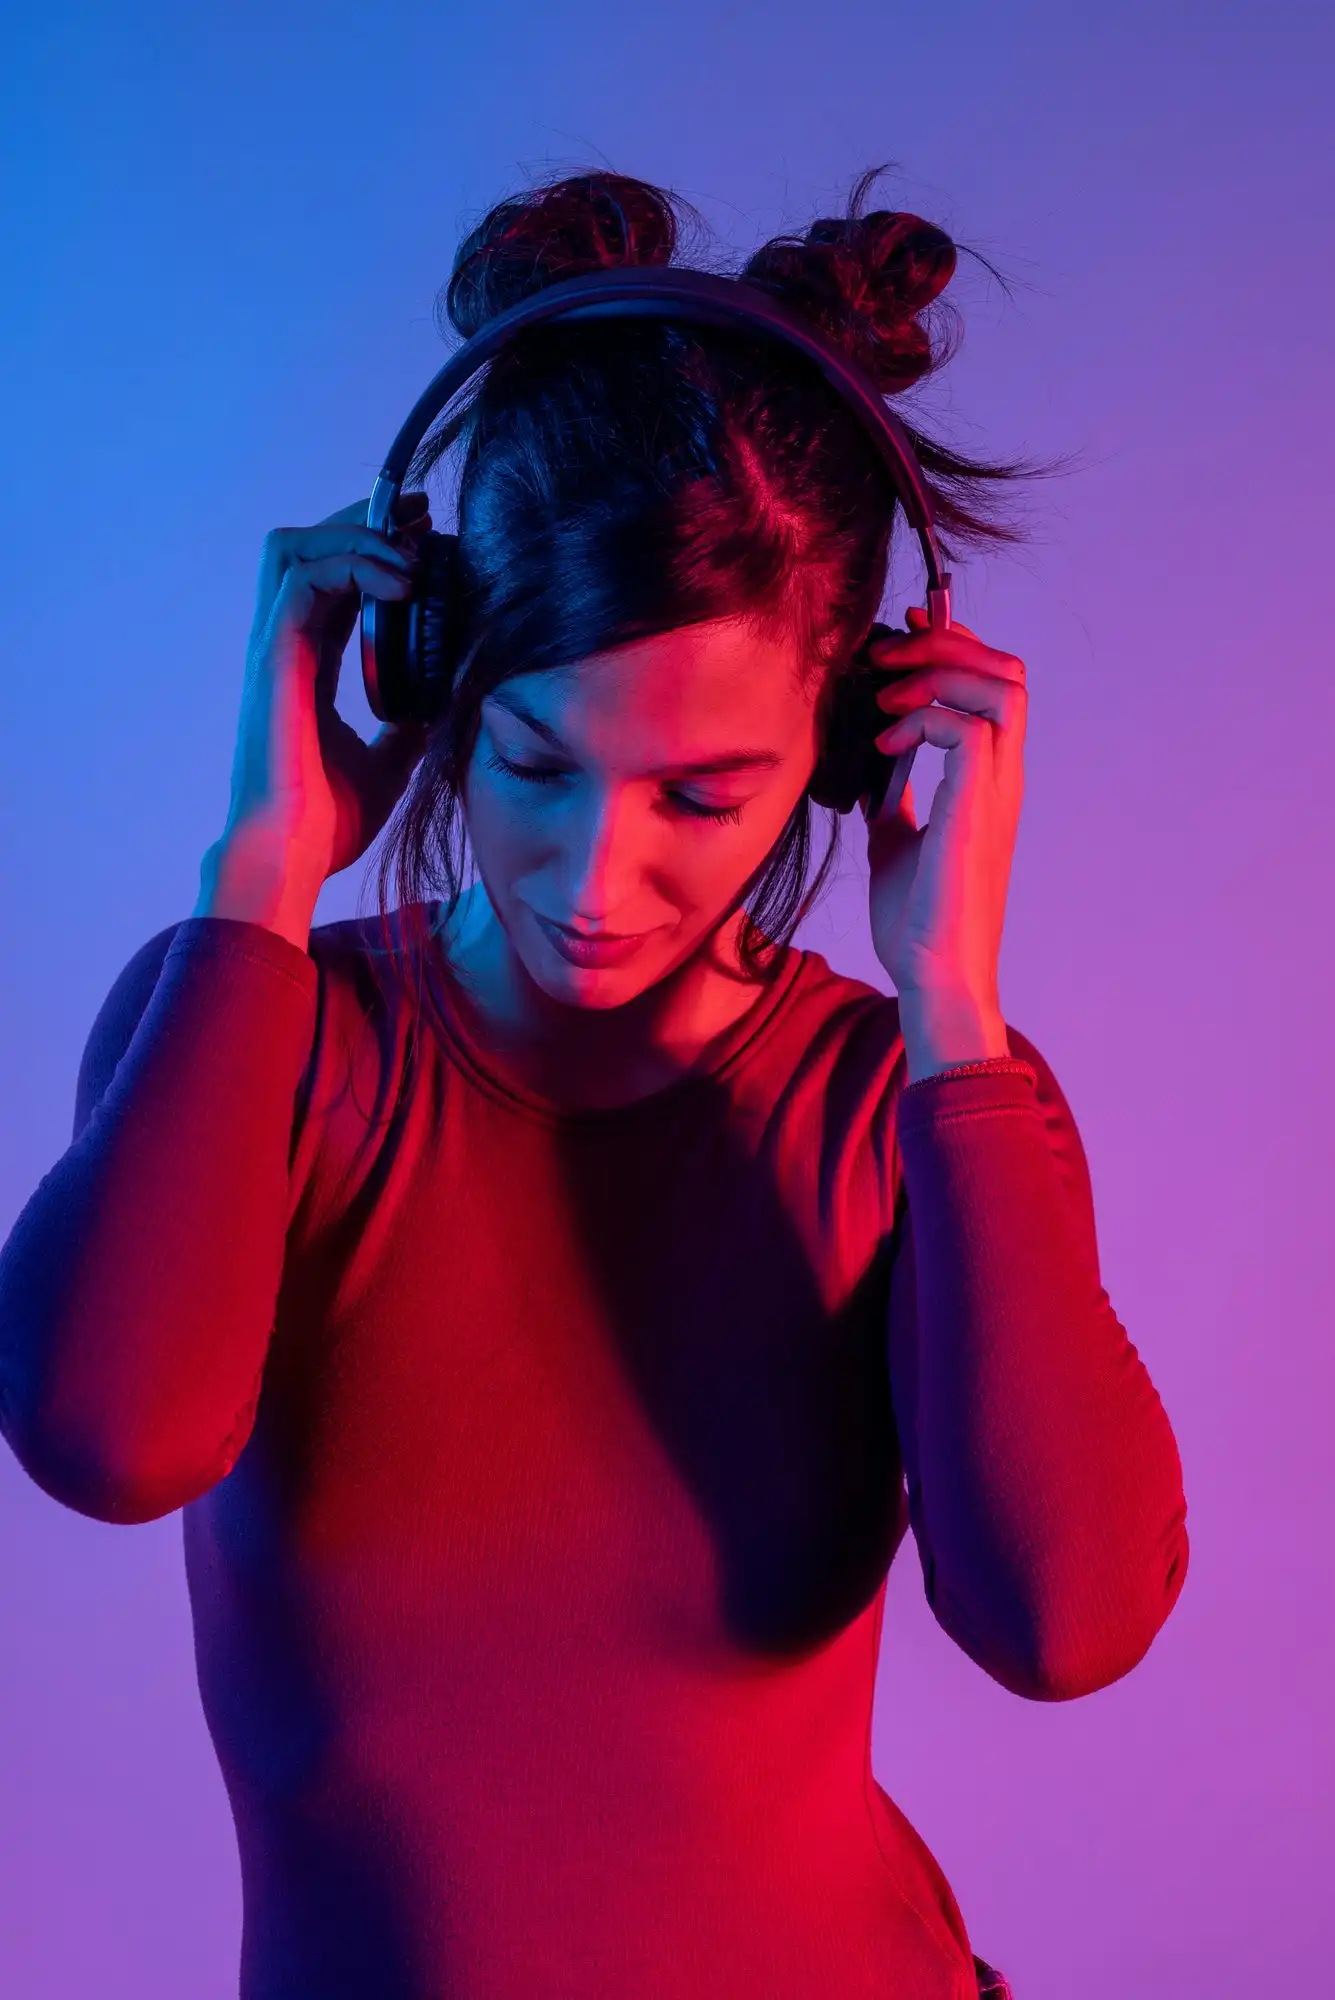 青と赤のライトに照らされたスタジオで音楽を聴くヘッドフォンを持った魅力的な女性